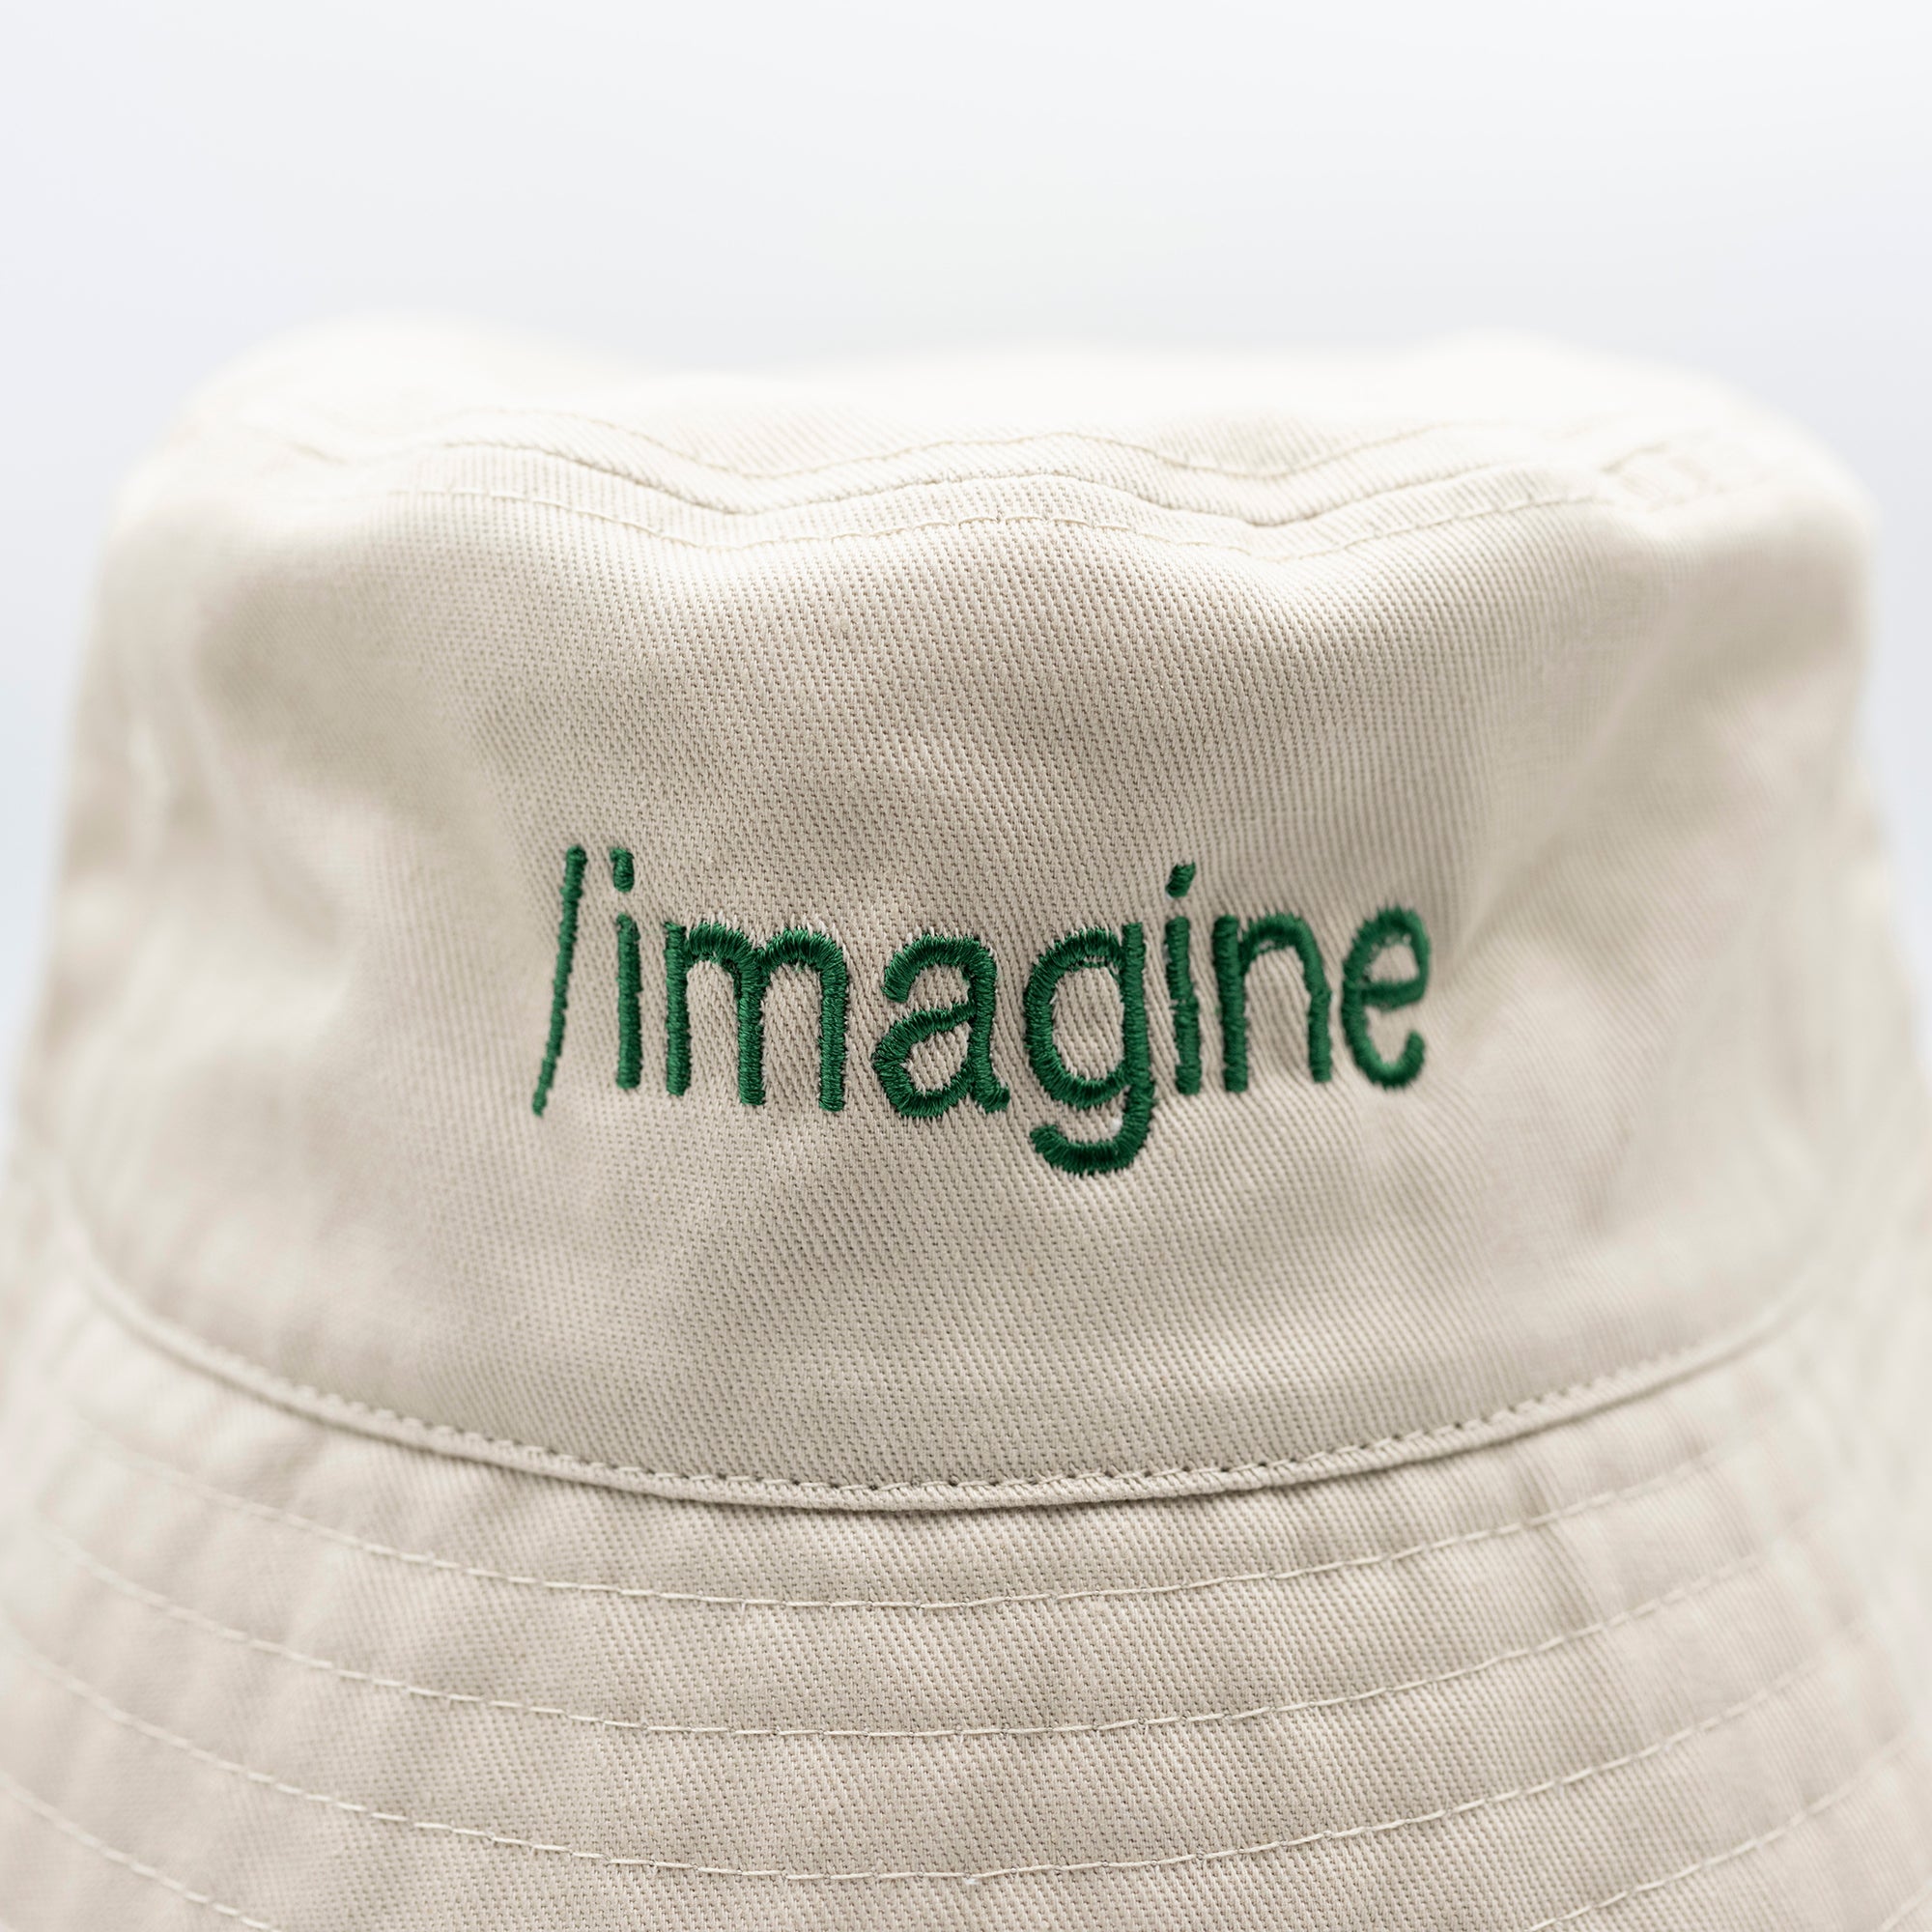 /imagine, bucket hat